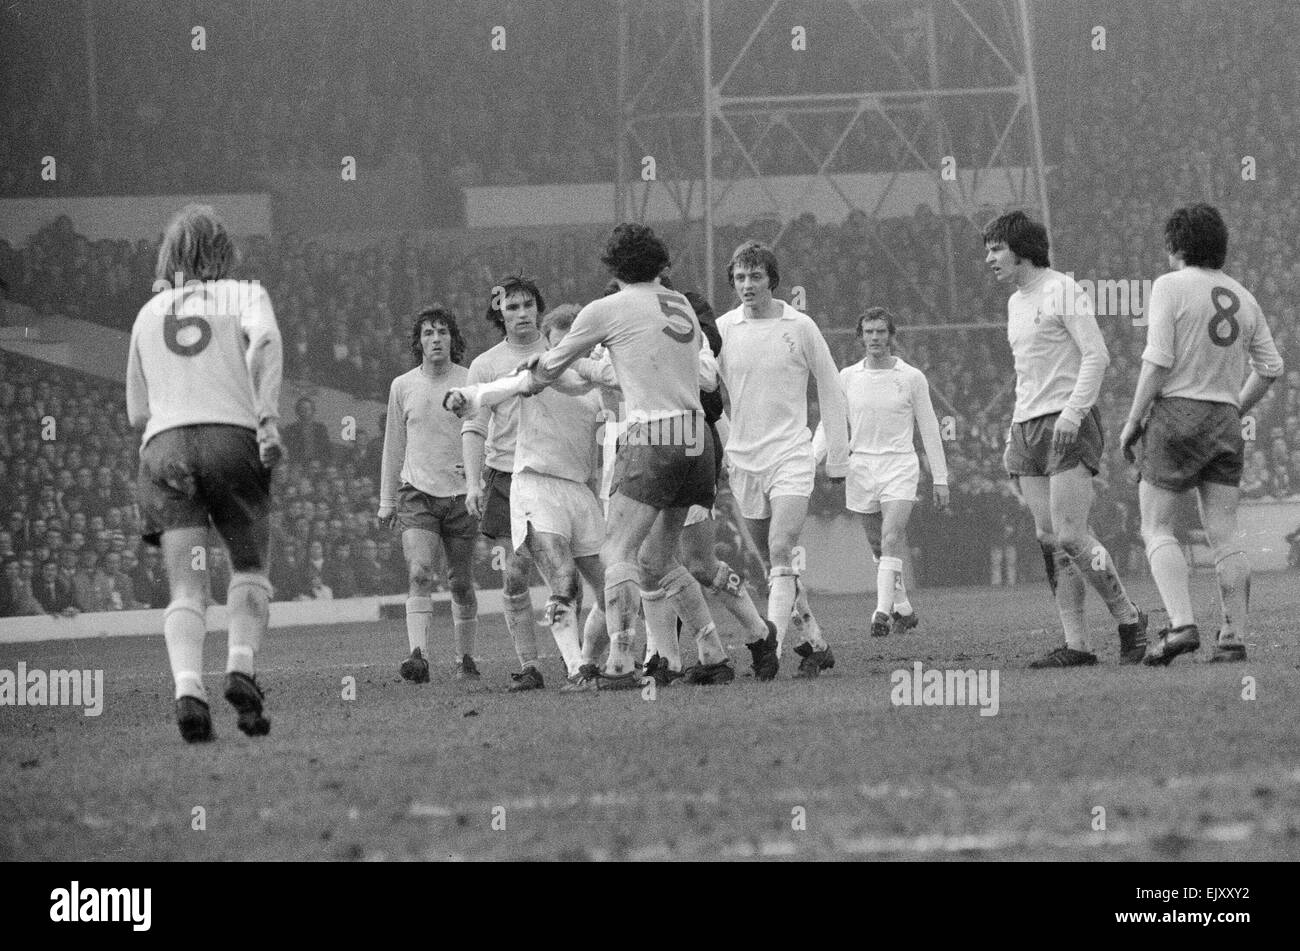 FA Cup Quarter Final match at Elland Road. Leeds United 2 v Tottenham Hotspur 1. 18th March 1972. Stock Photo